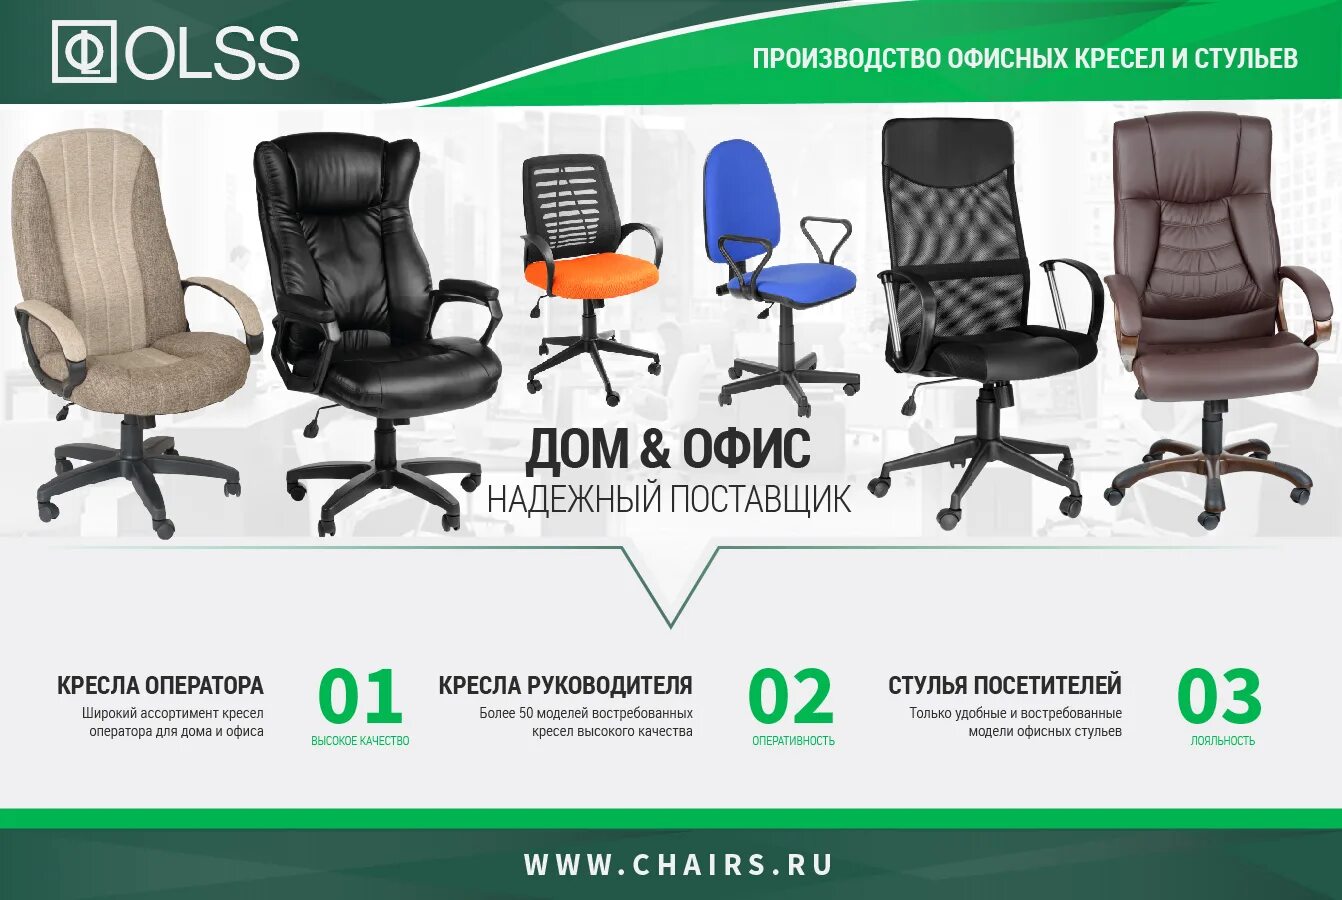 Производитель офисных стульев. Кресло офисное 8018 MSC. Офисный стул производитель. Кресло руководителя. Прочное офисное кресло.